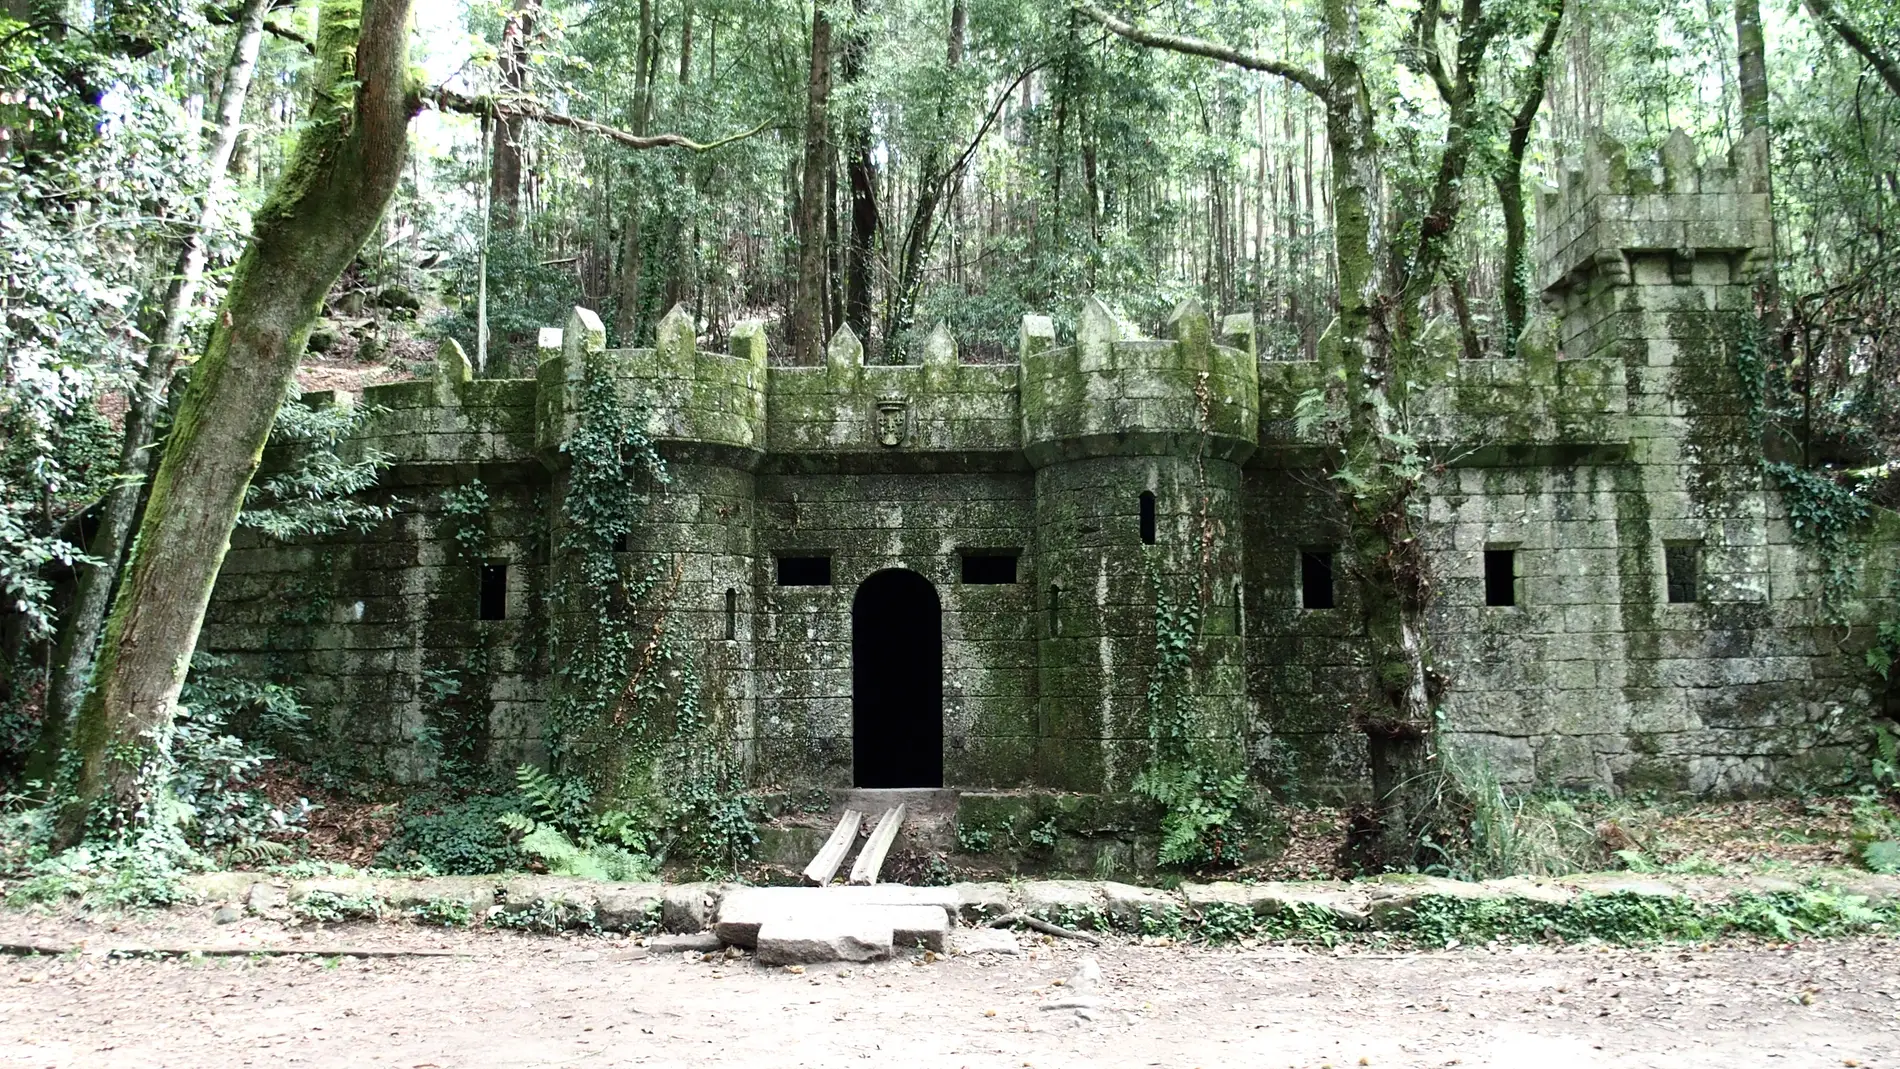 Descubre la Finca de Frendoal, un castillo &#39;medieval&#39; envuelto en un bosque de fantasía